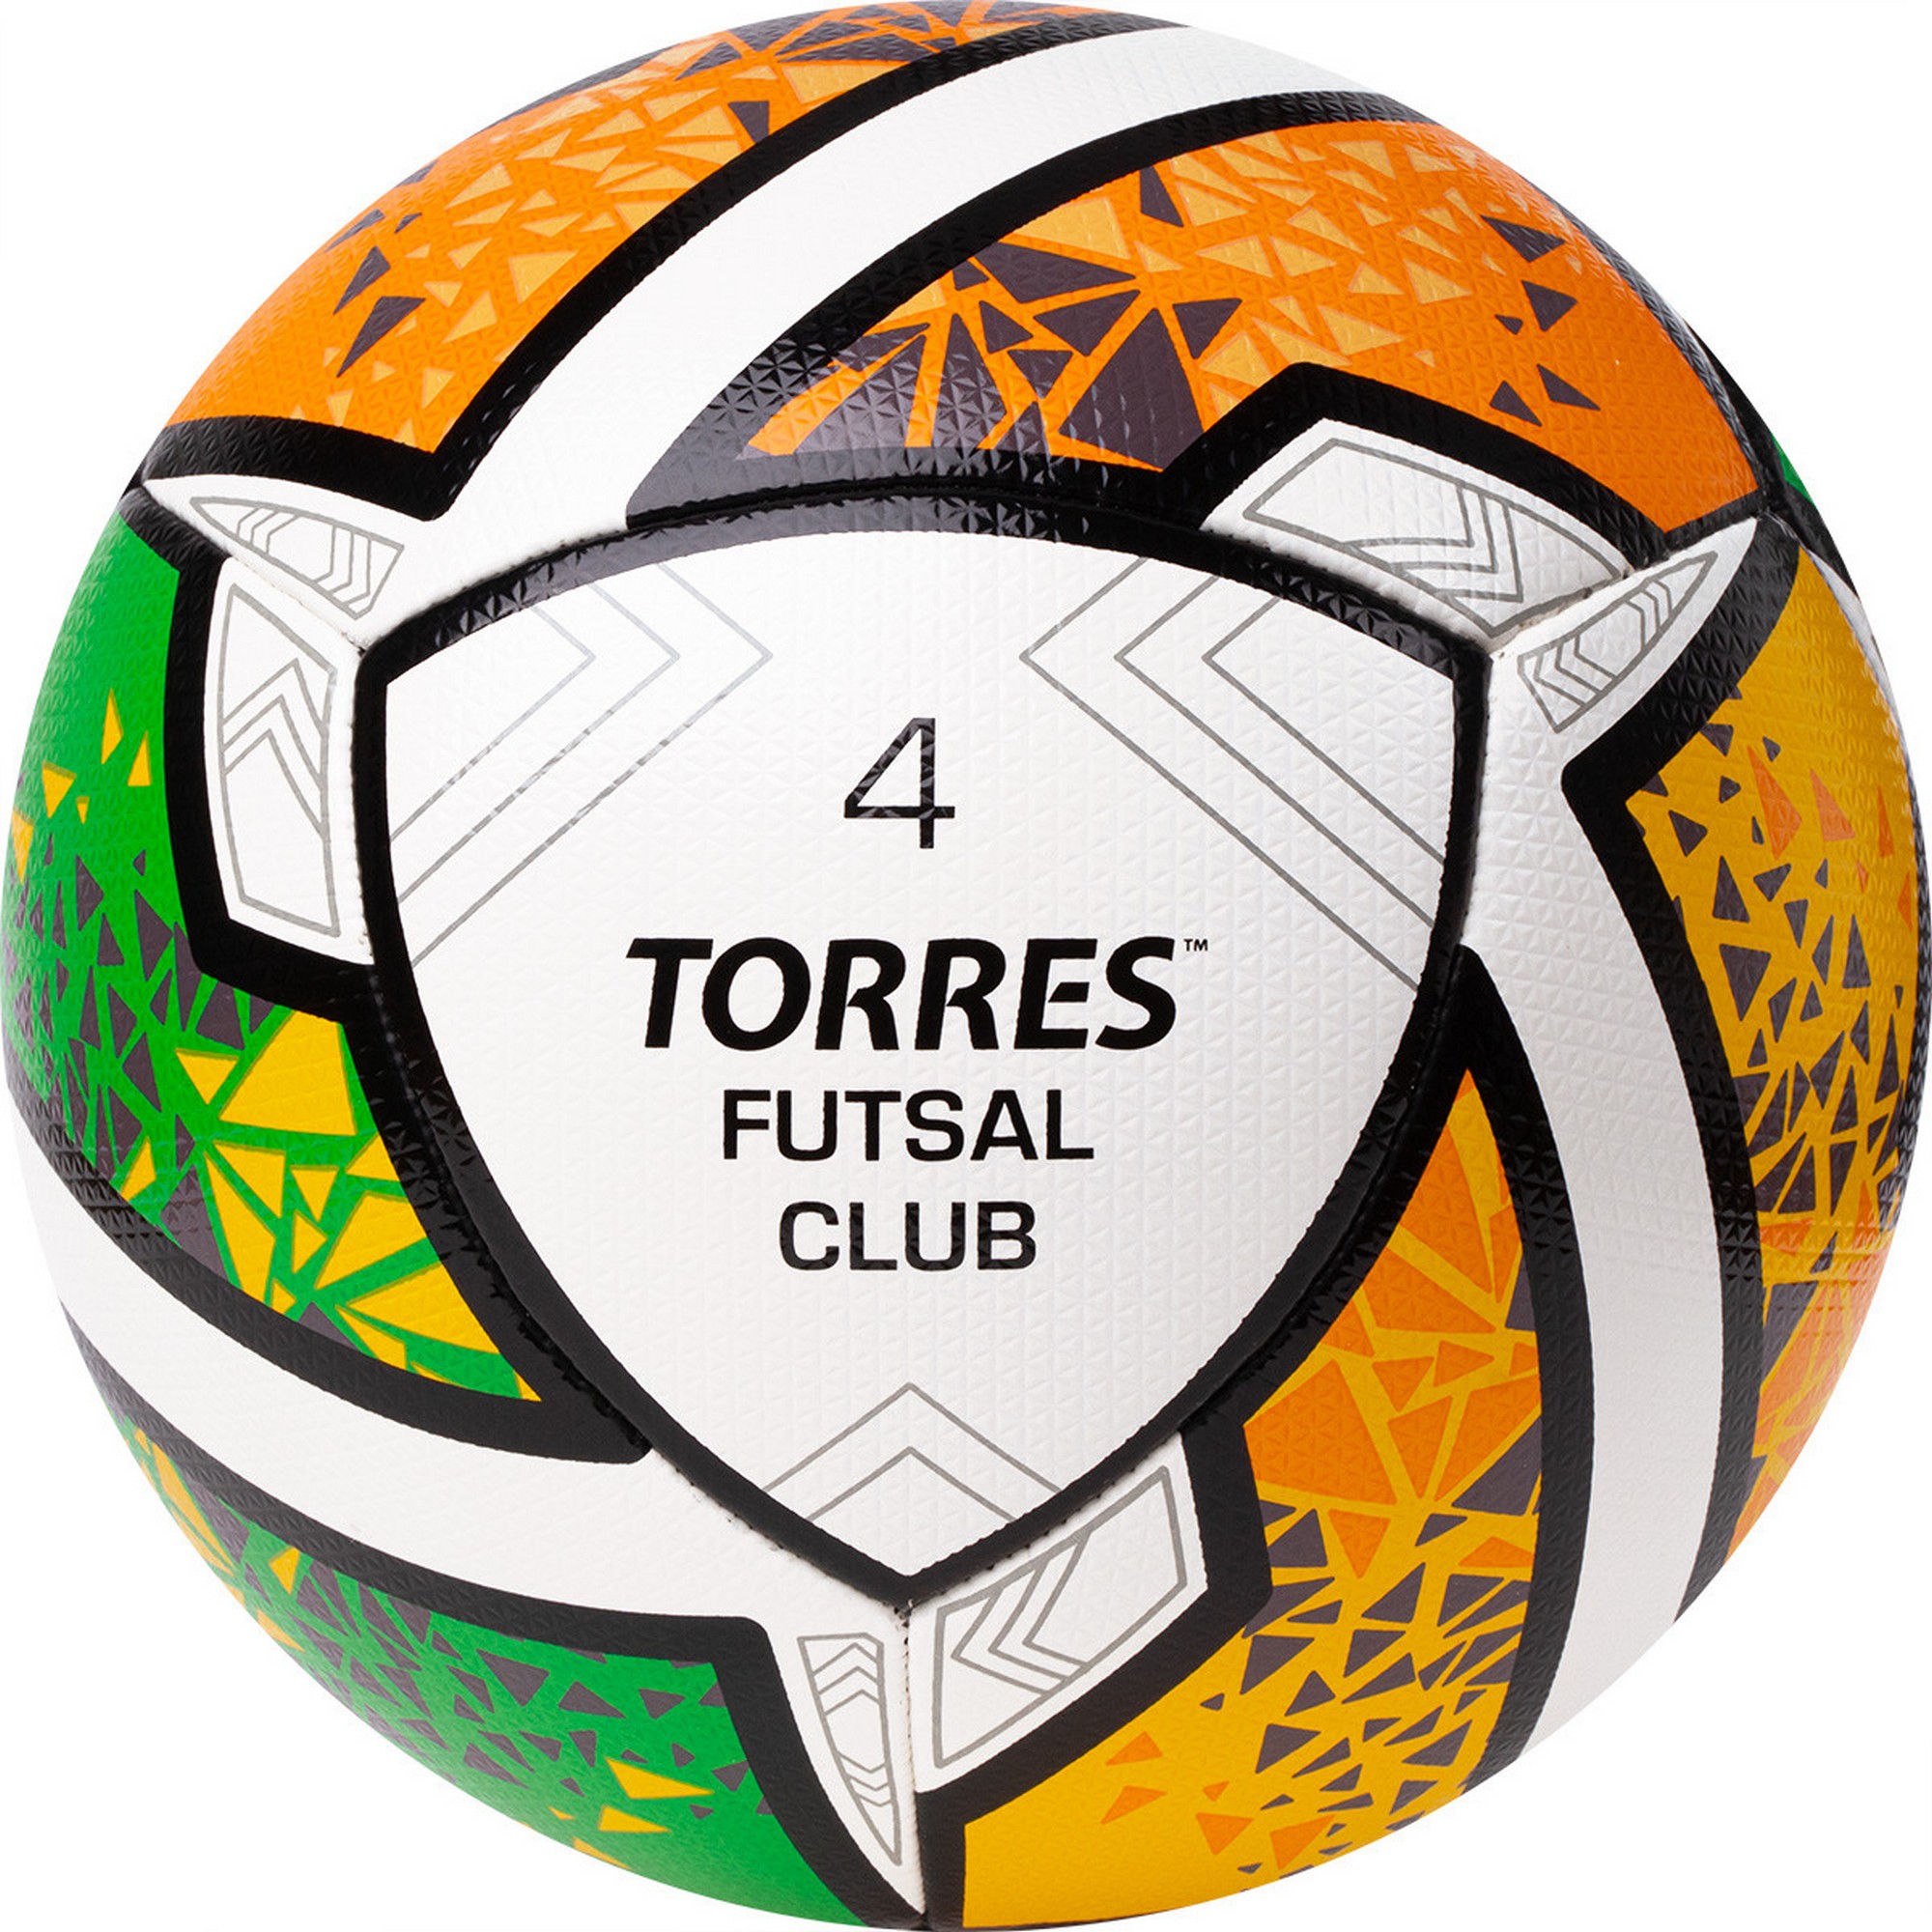   Torres Futsal Club FS323764 .4